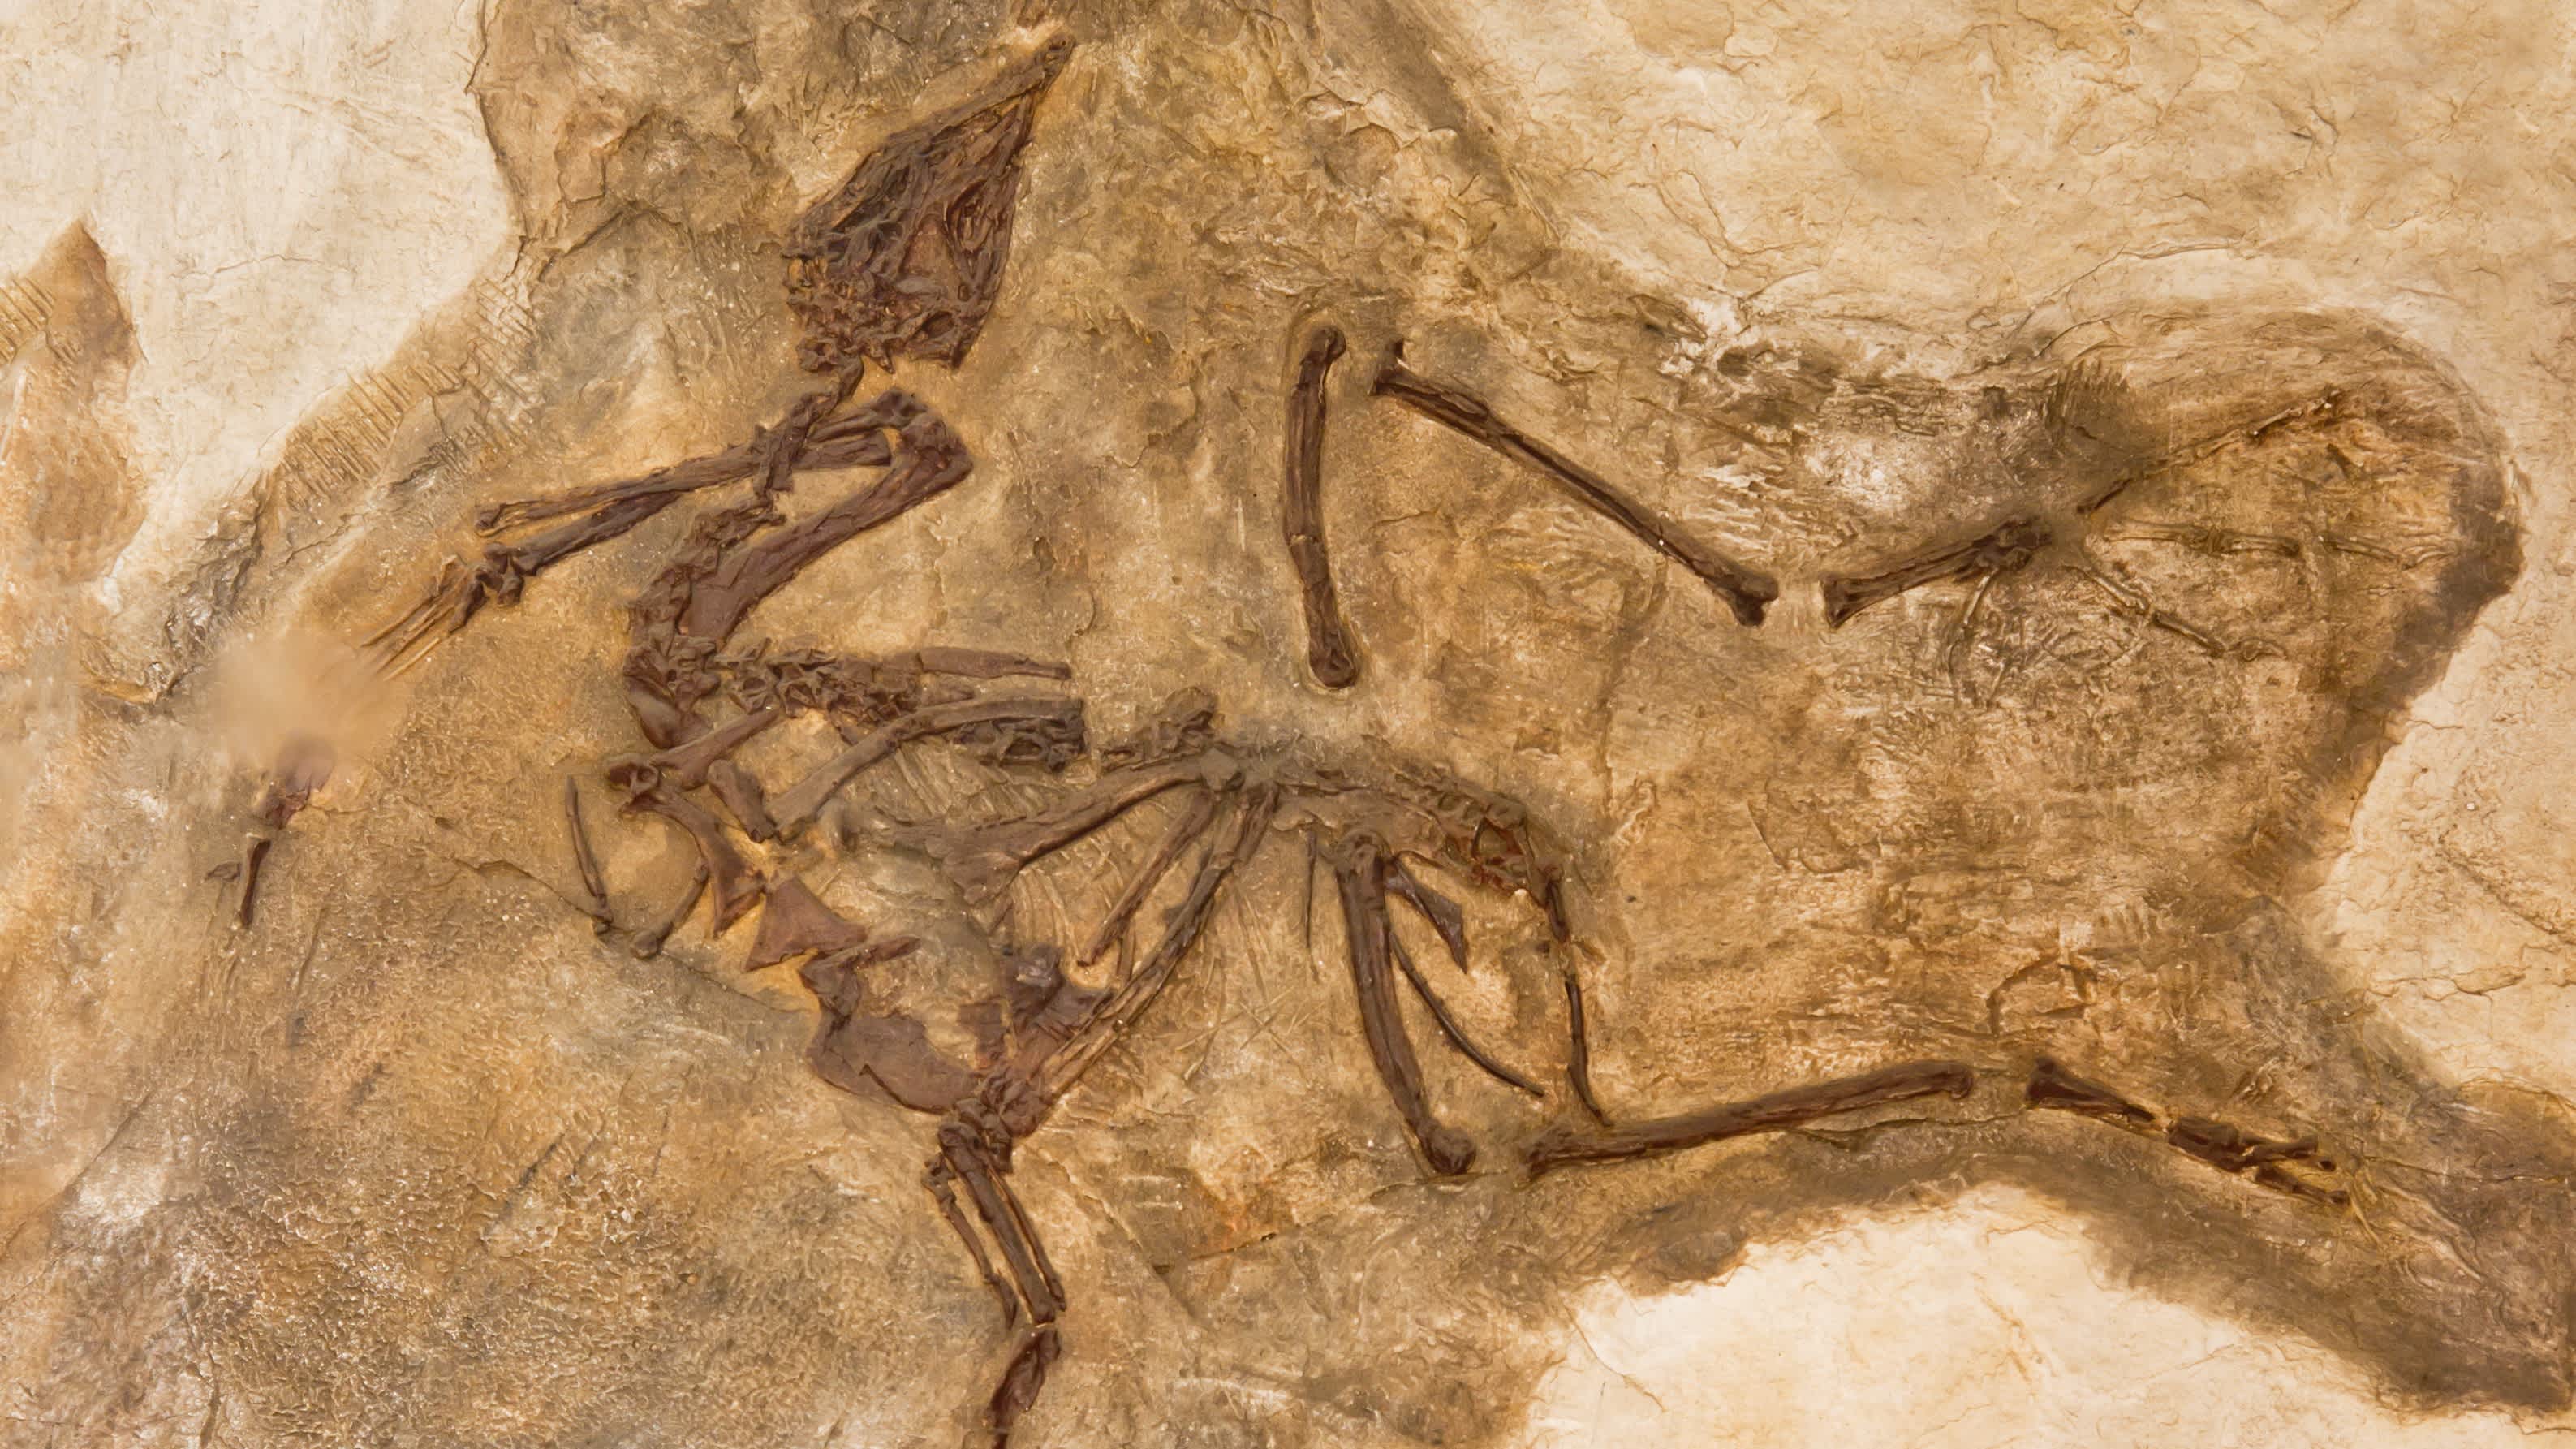 Un fossile d'oiseau au Houston Museum of Natural Science, Texas, États-Unis